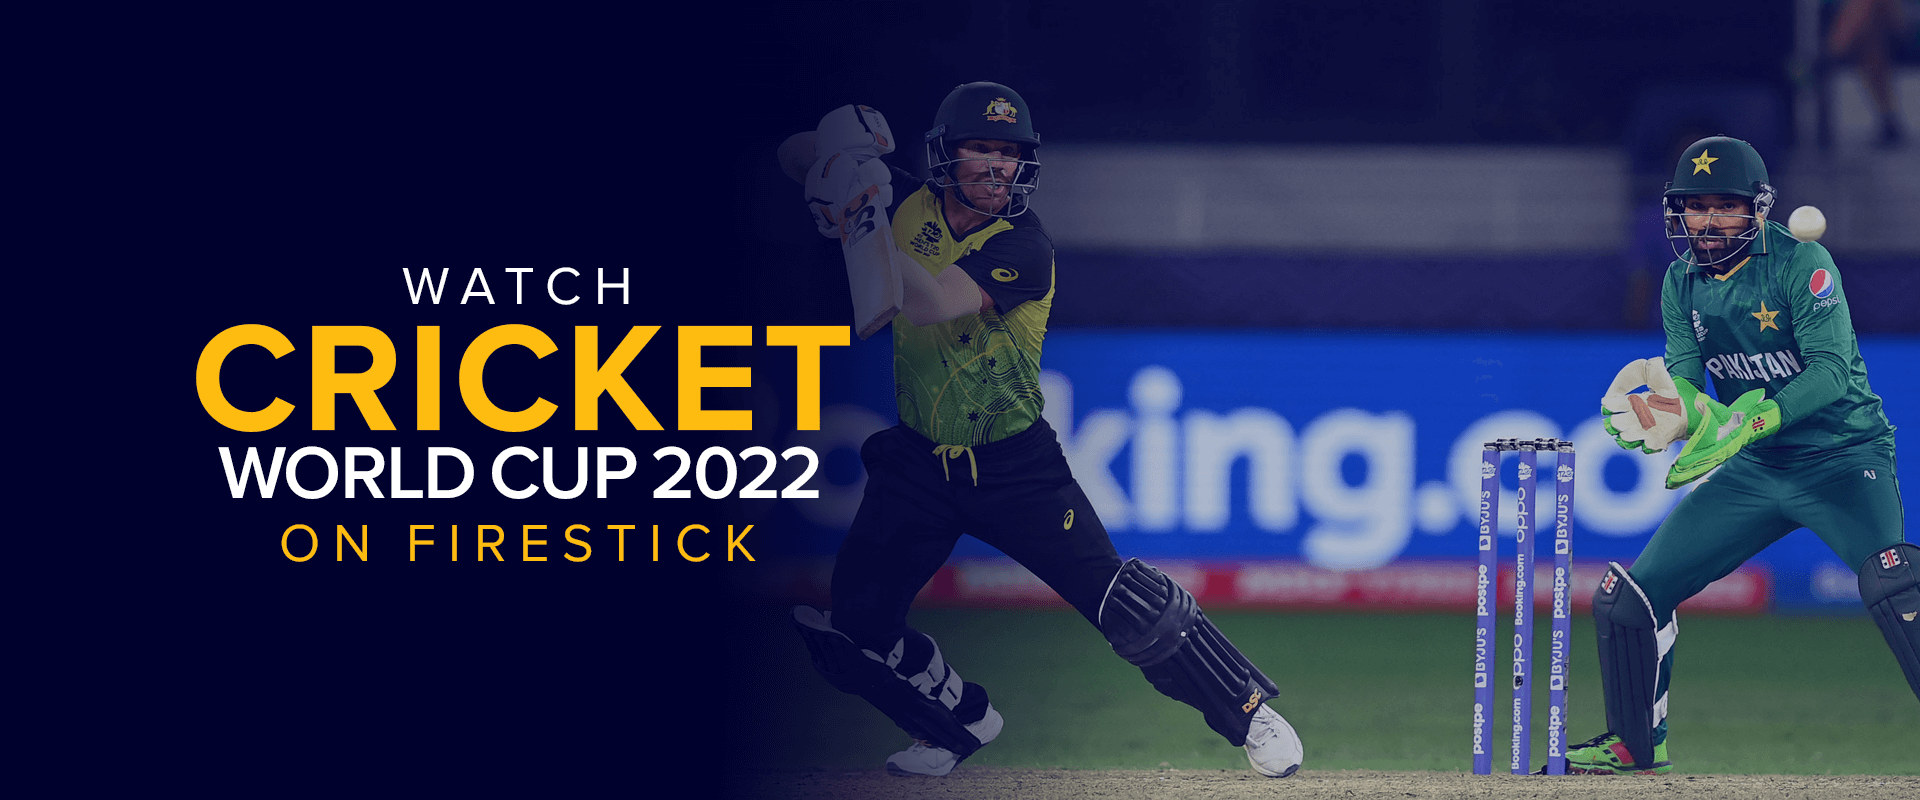 Watch Cricket World Cup 2022 on Firestick